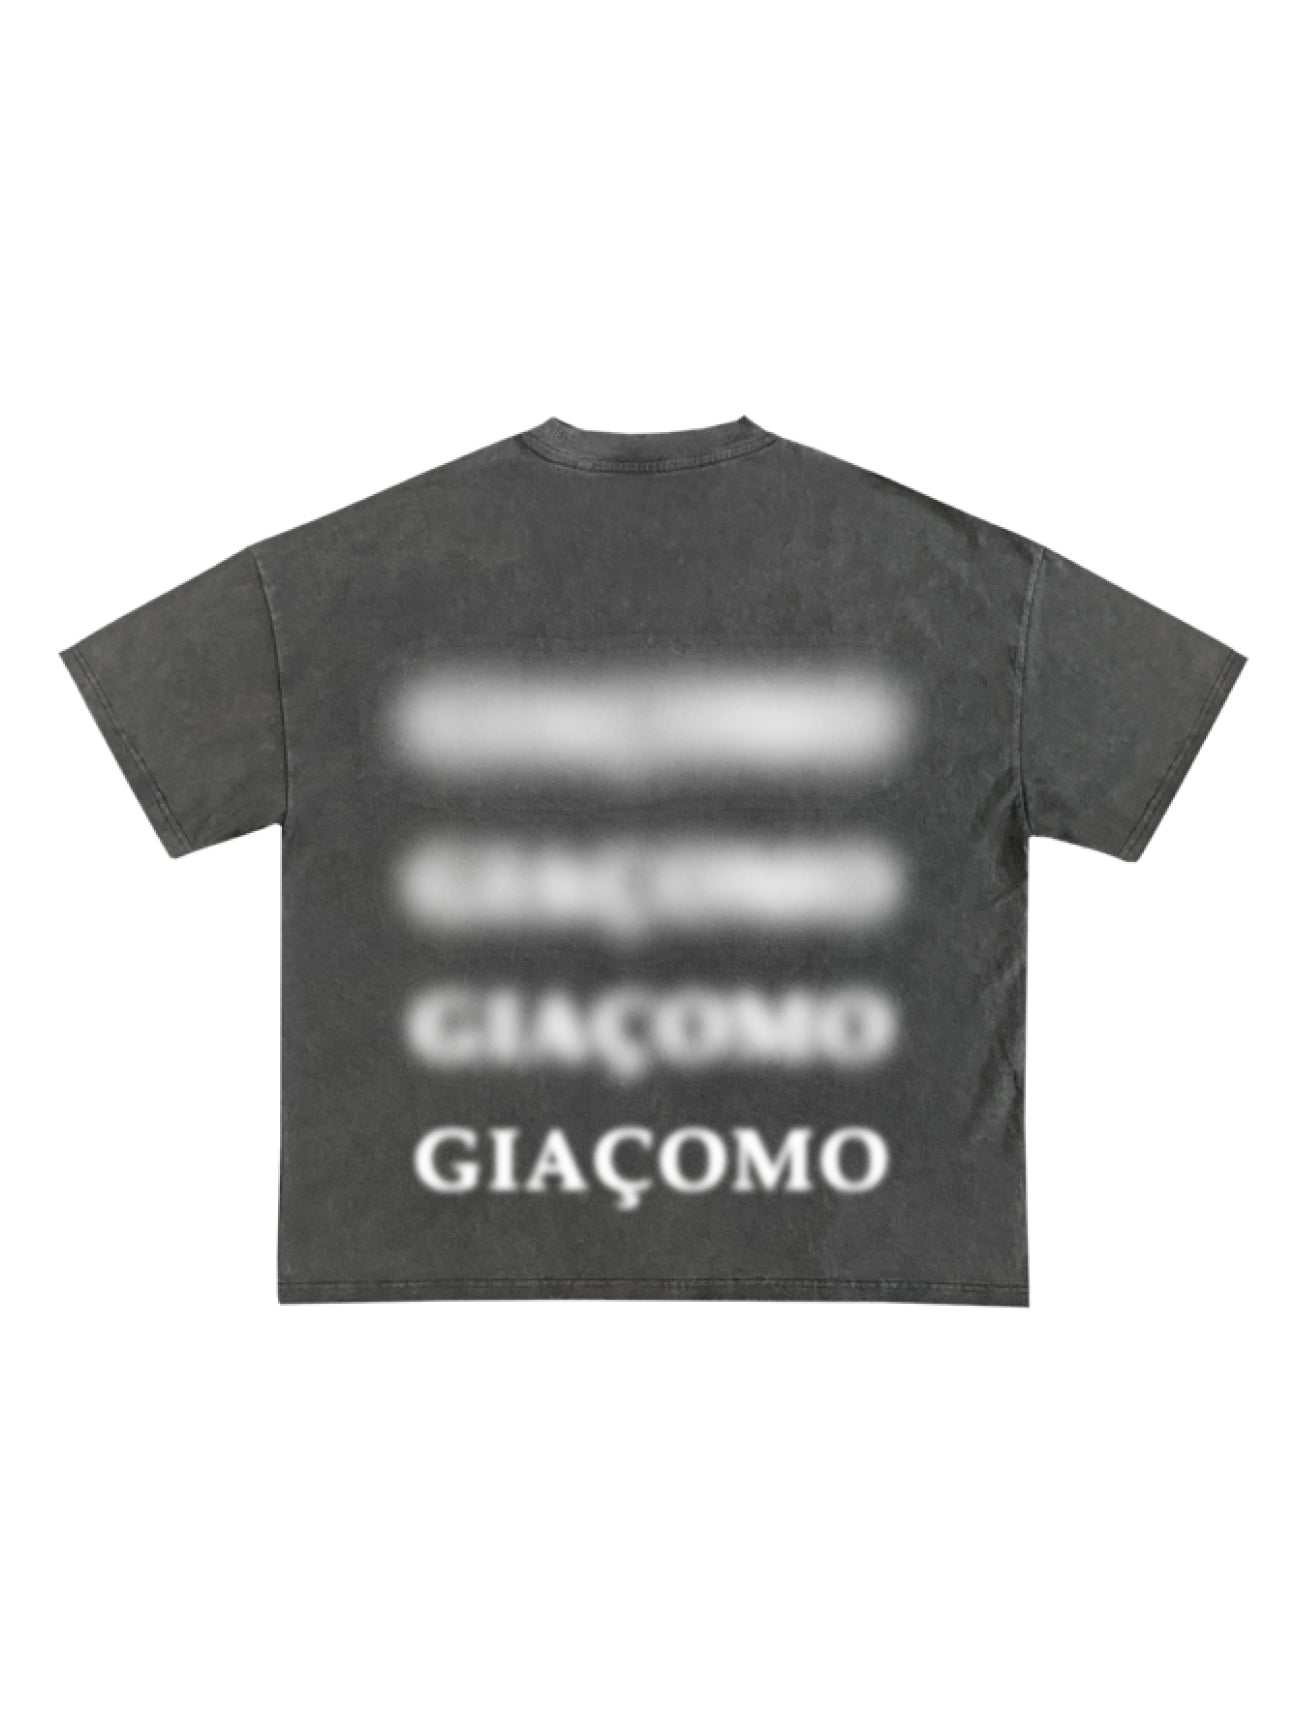 'Giacomo' Floating Smoke Washed Grey T-Shirt